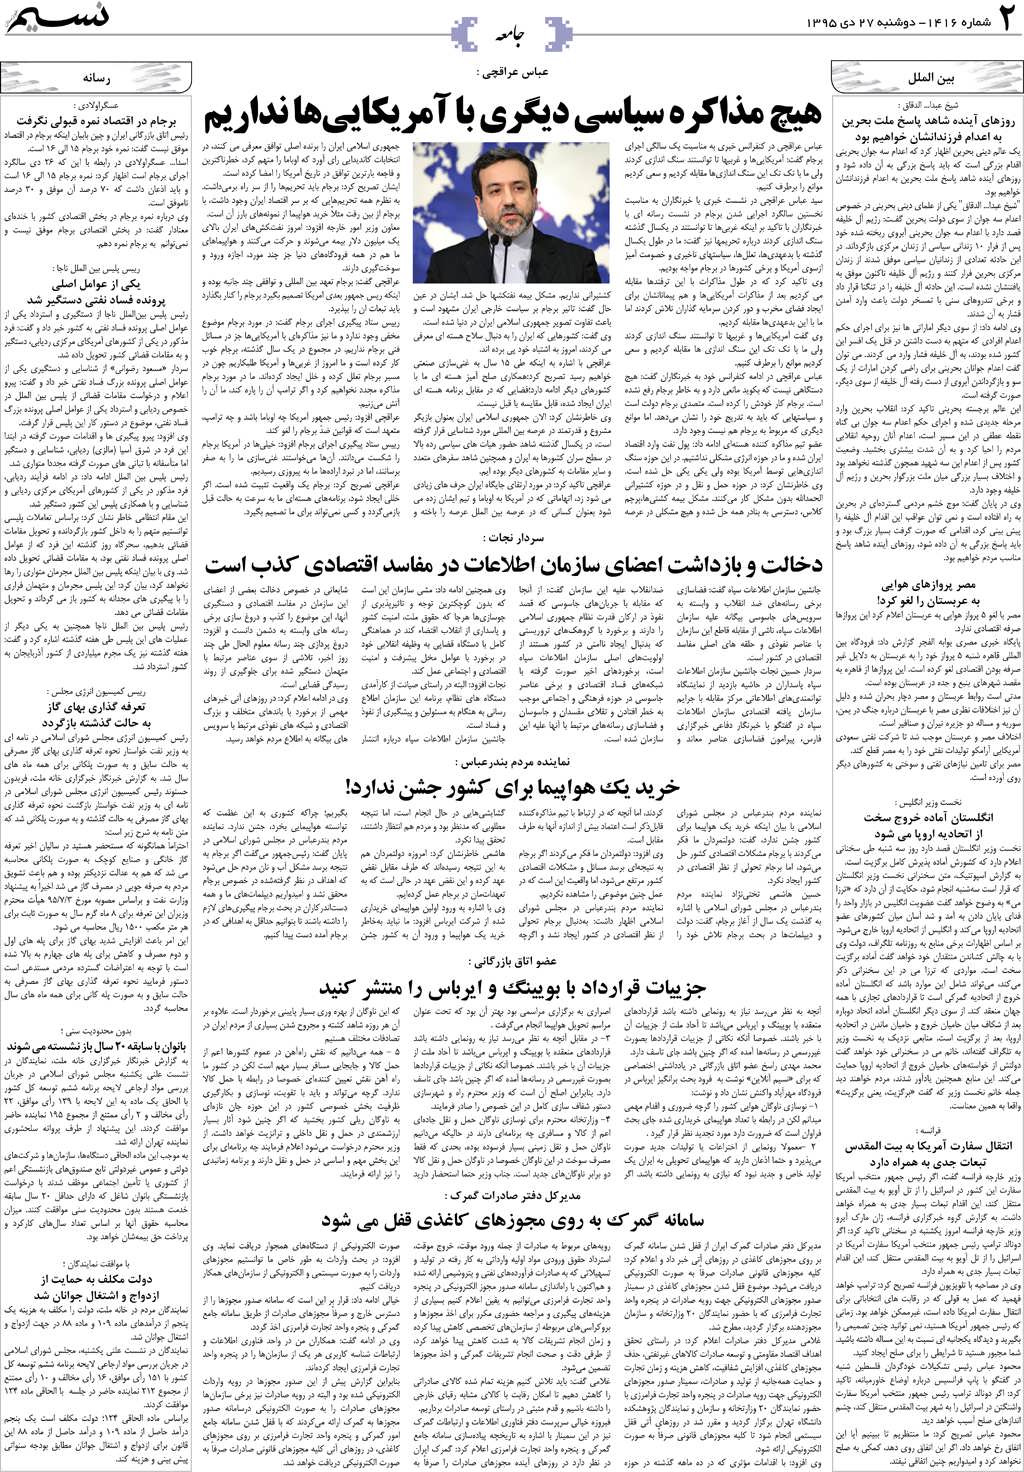 صفحه جامعه روزنامه نسیم شماره 1416